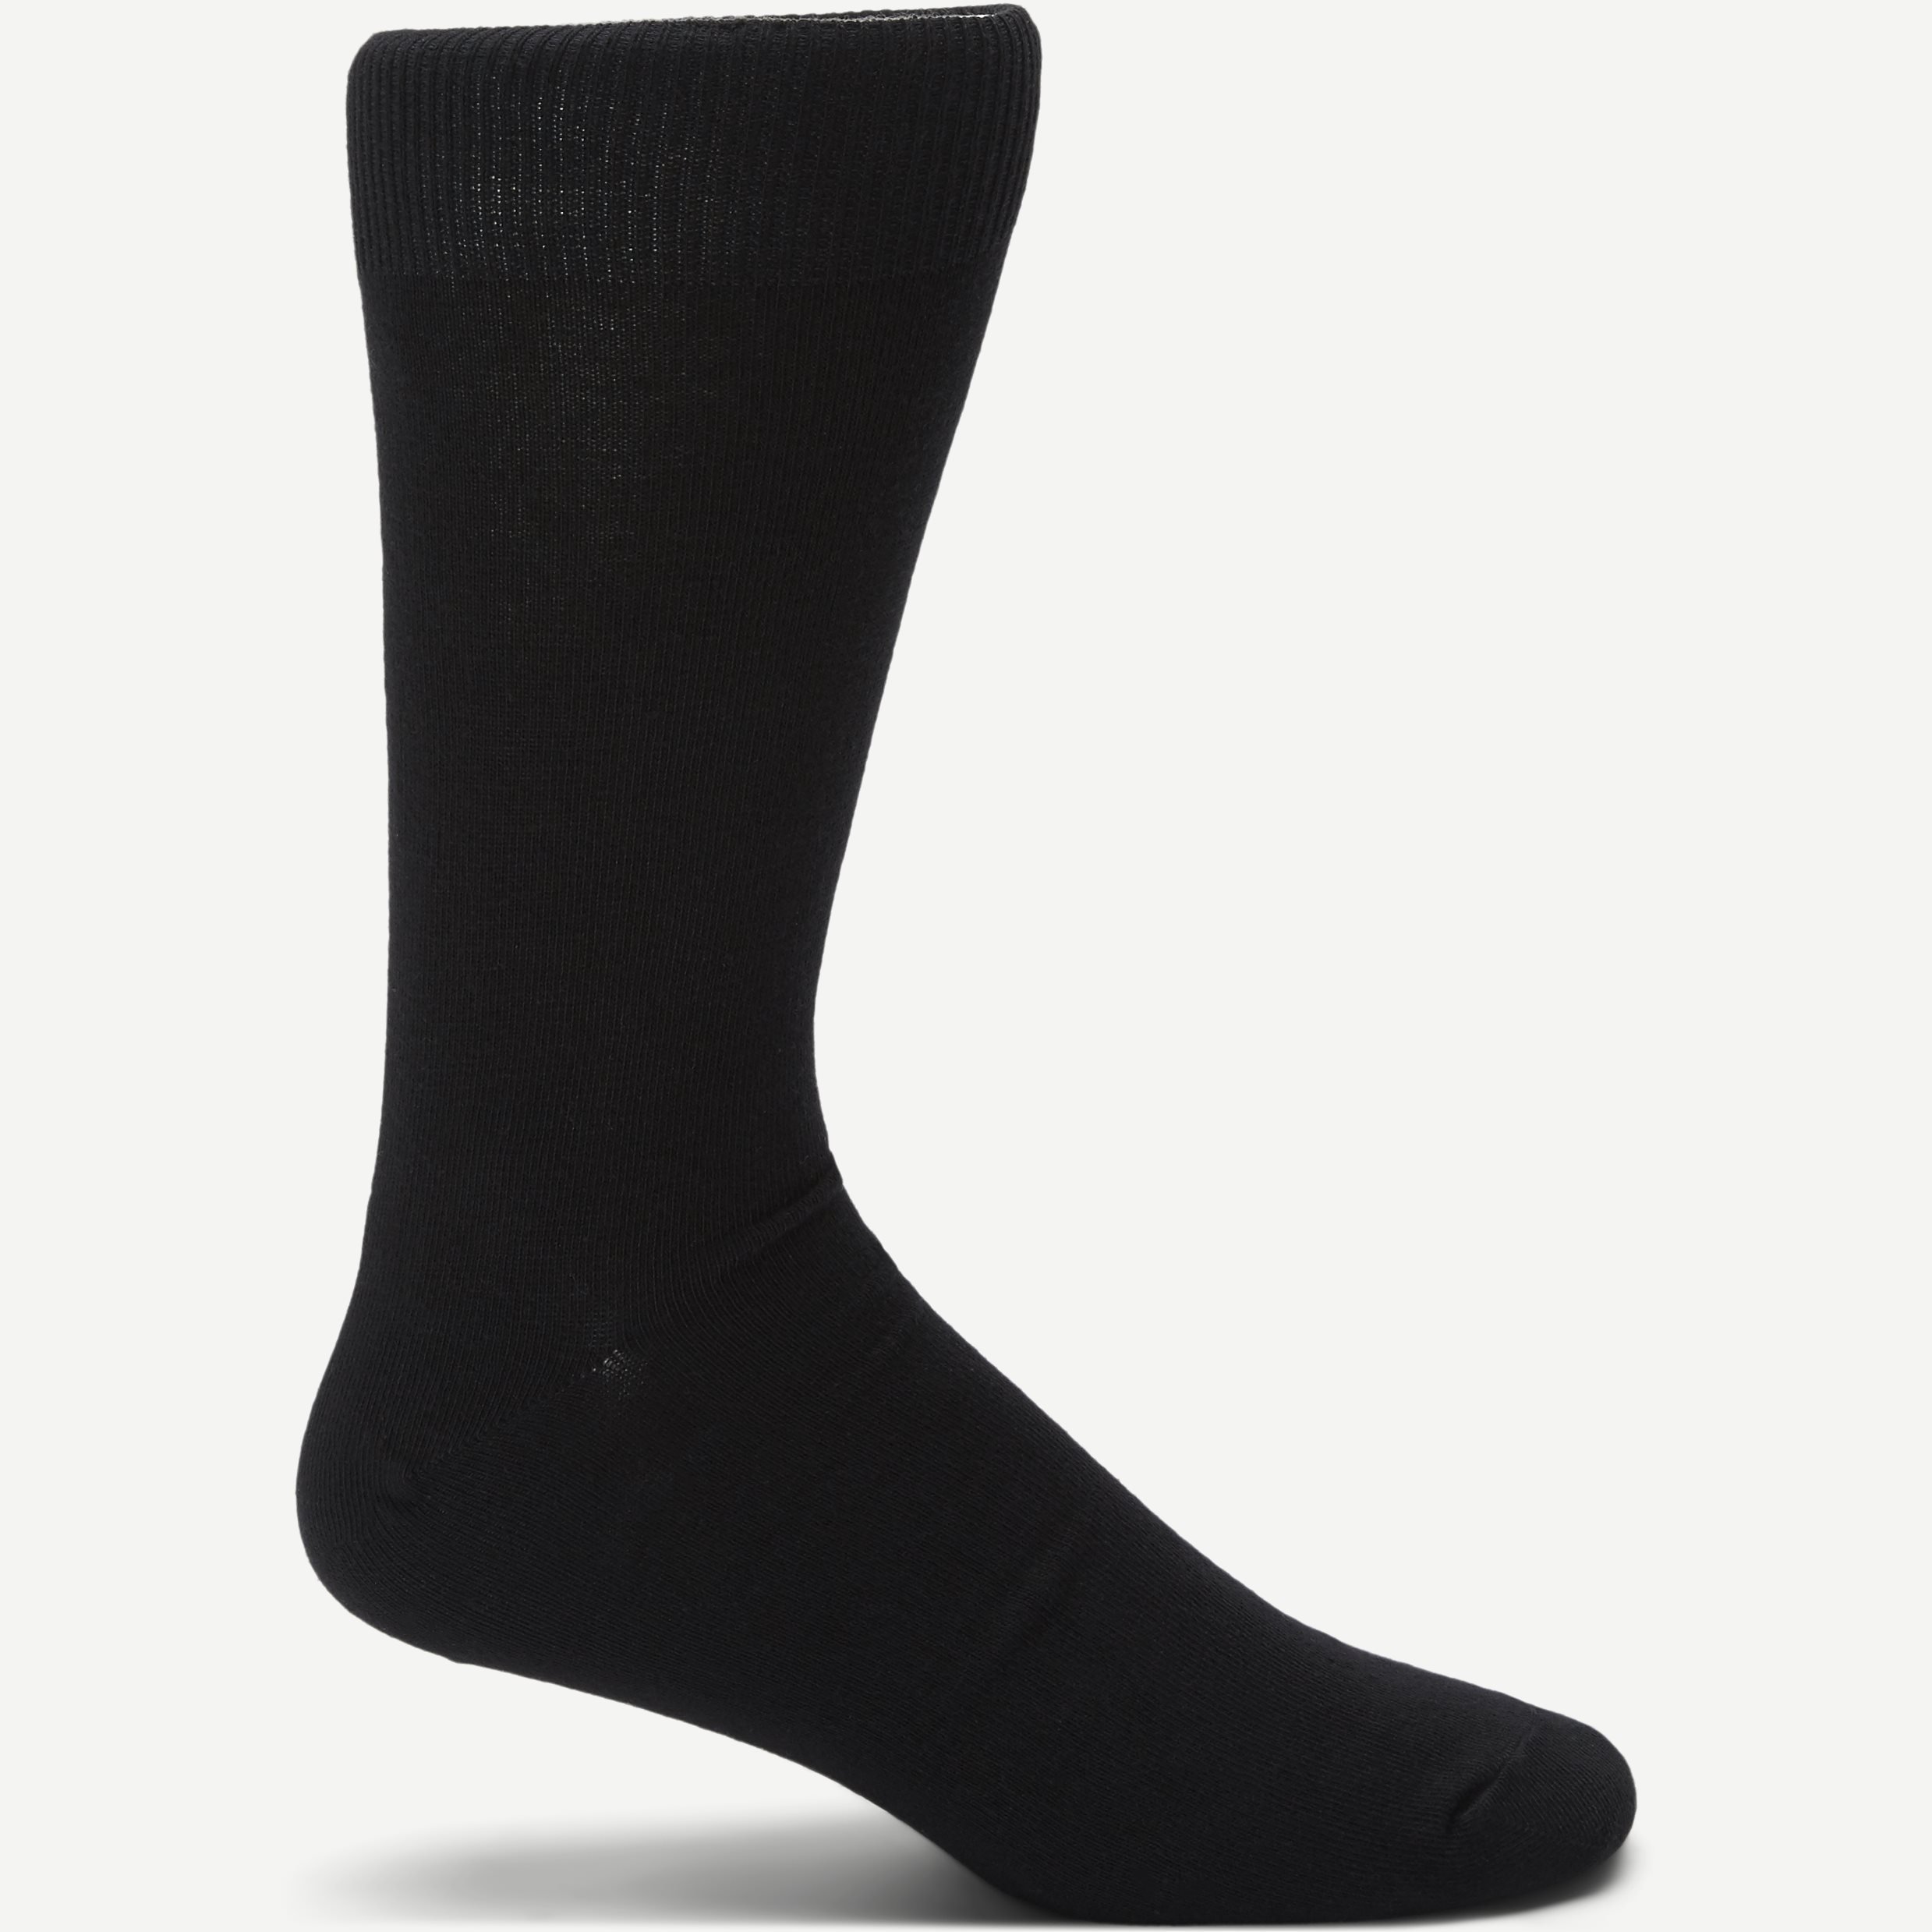 George Soccer - Socks - Black